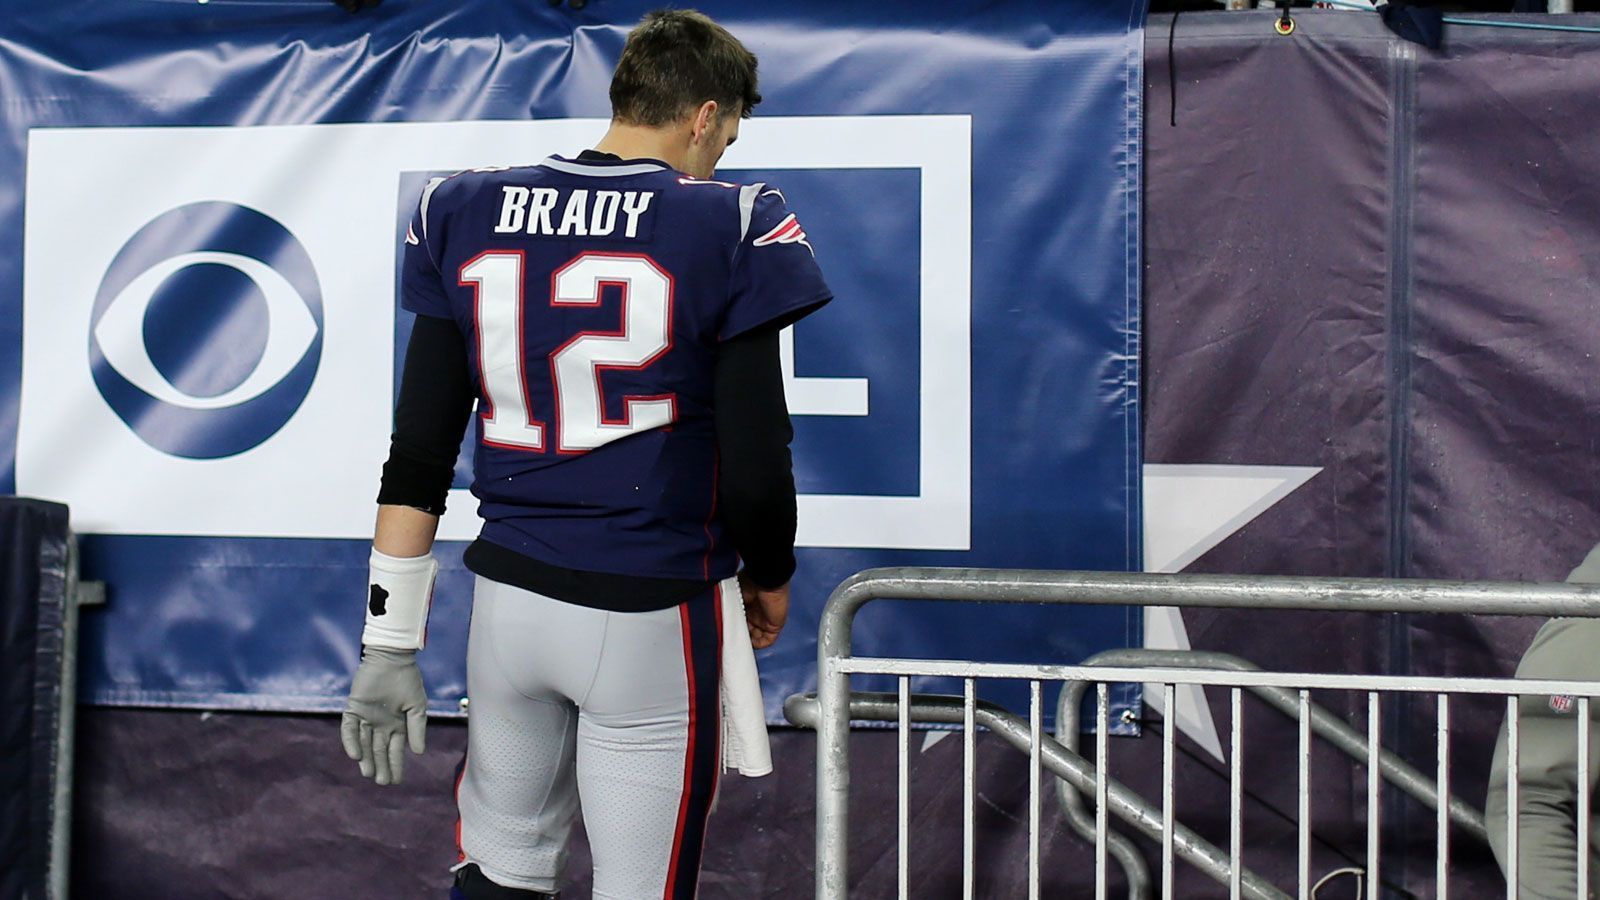 
                <strong>Wer folgt bei den New England Patriots auf Tom Brady?</strong><br>
                Tom Brady kehrt den New England Patriots nach 20 Jahren und der erfolgreichsten Ära der Klub-Geschichte den Rücken. Zurück bleibt ein verwaister Regie-Posten. Wer kann die Lücke füllen? ran.de nennt mögliche Kandidaten als Nachfolger des "GOAT".
              